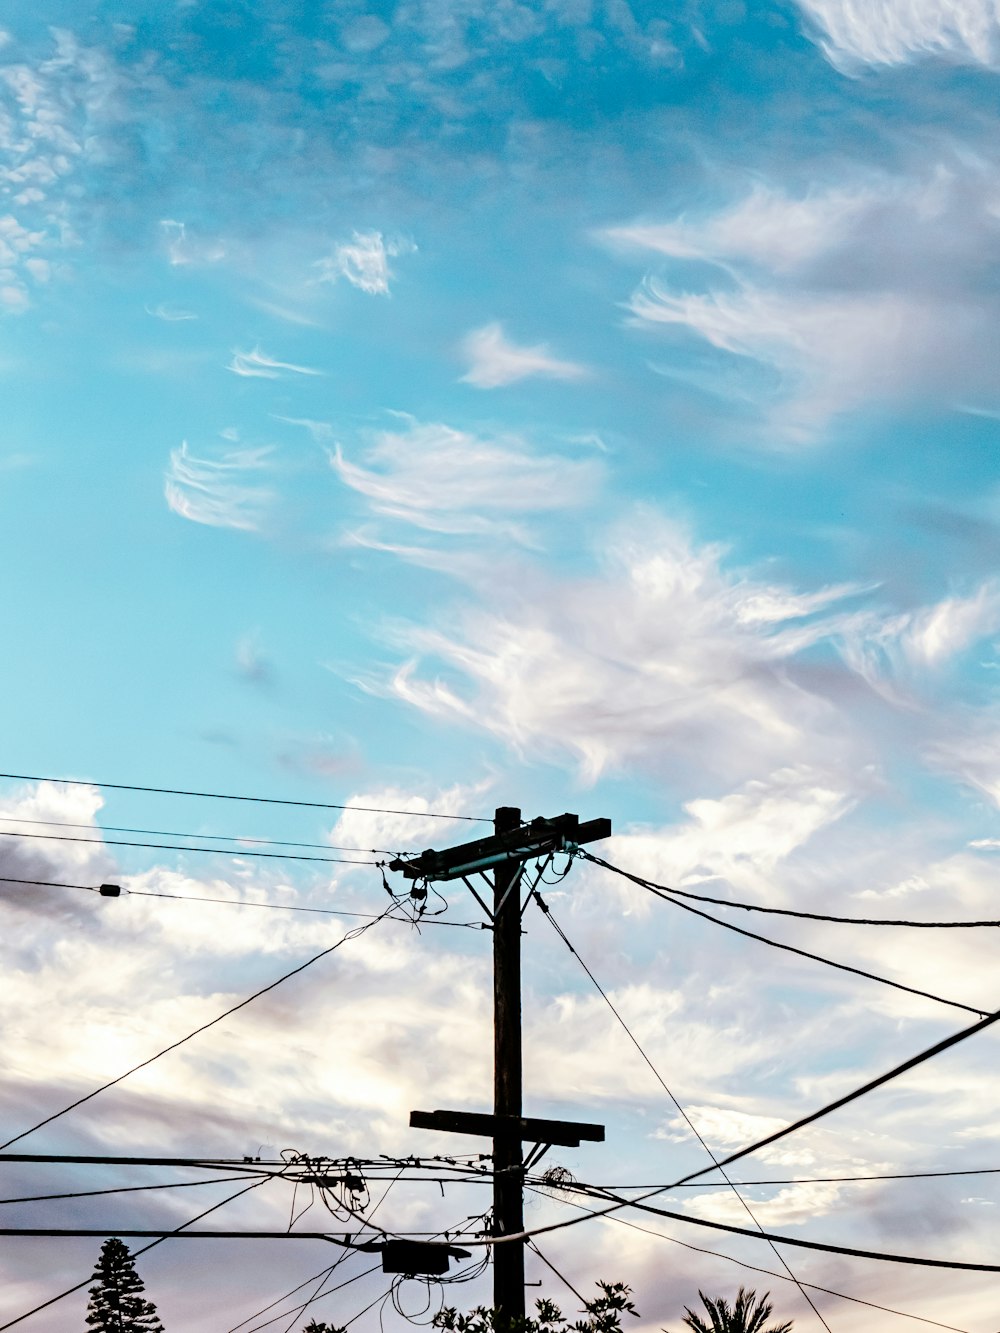 palo elettrico nero sotto cielo blu e nuvole bianche durante il giorno